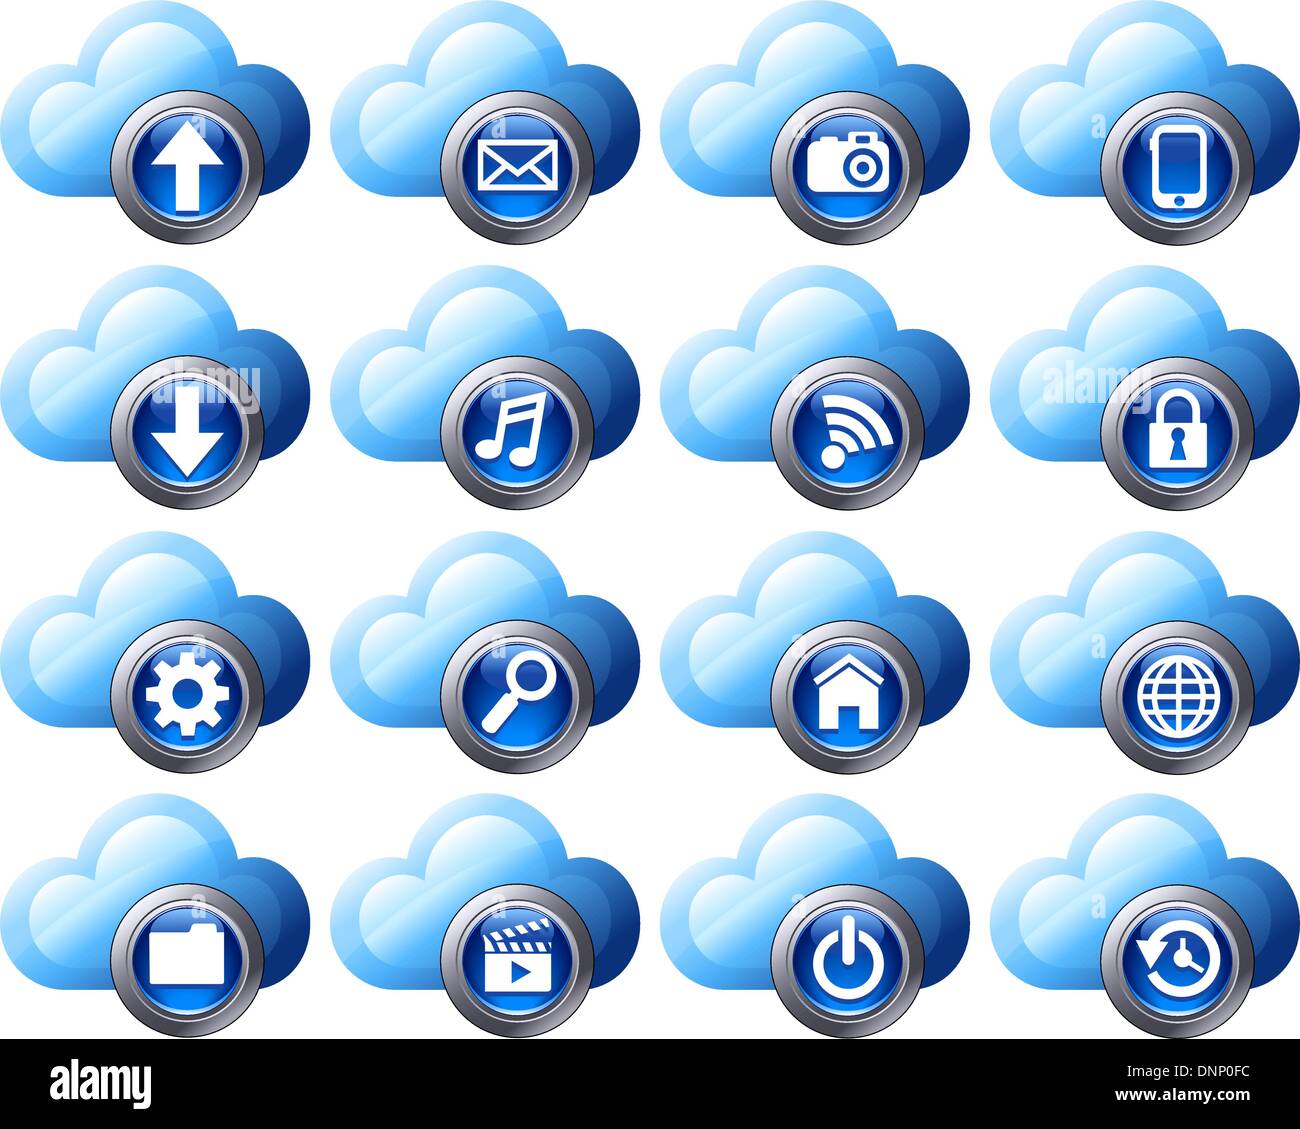 Icônes cloud virtuel charger, télécharger, dossiers, images, films, vidéos, musique, e-mail, téléphone, connexion, de sauvegarde et de restauration Illustration de Vecteur